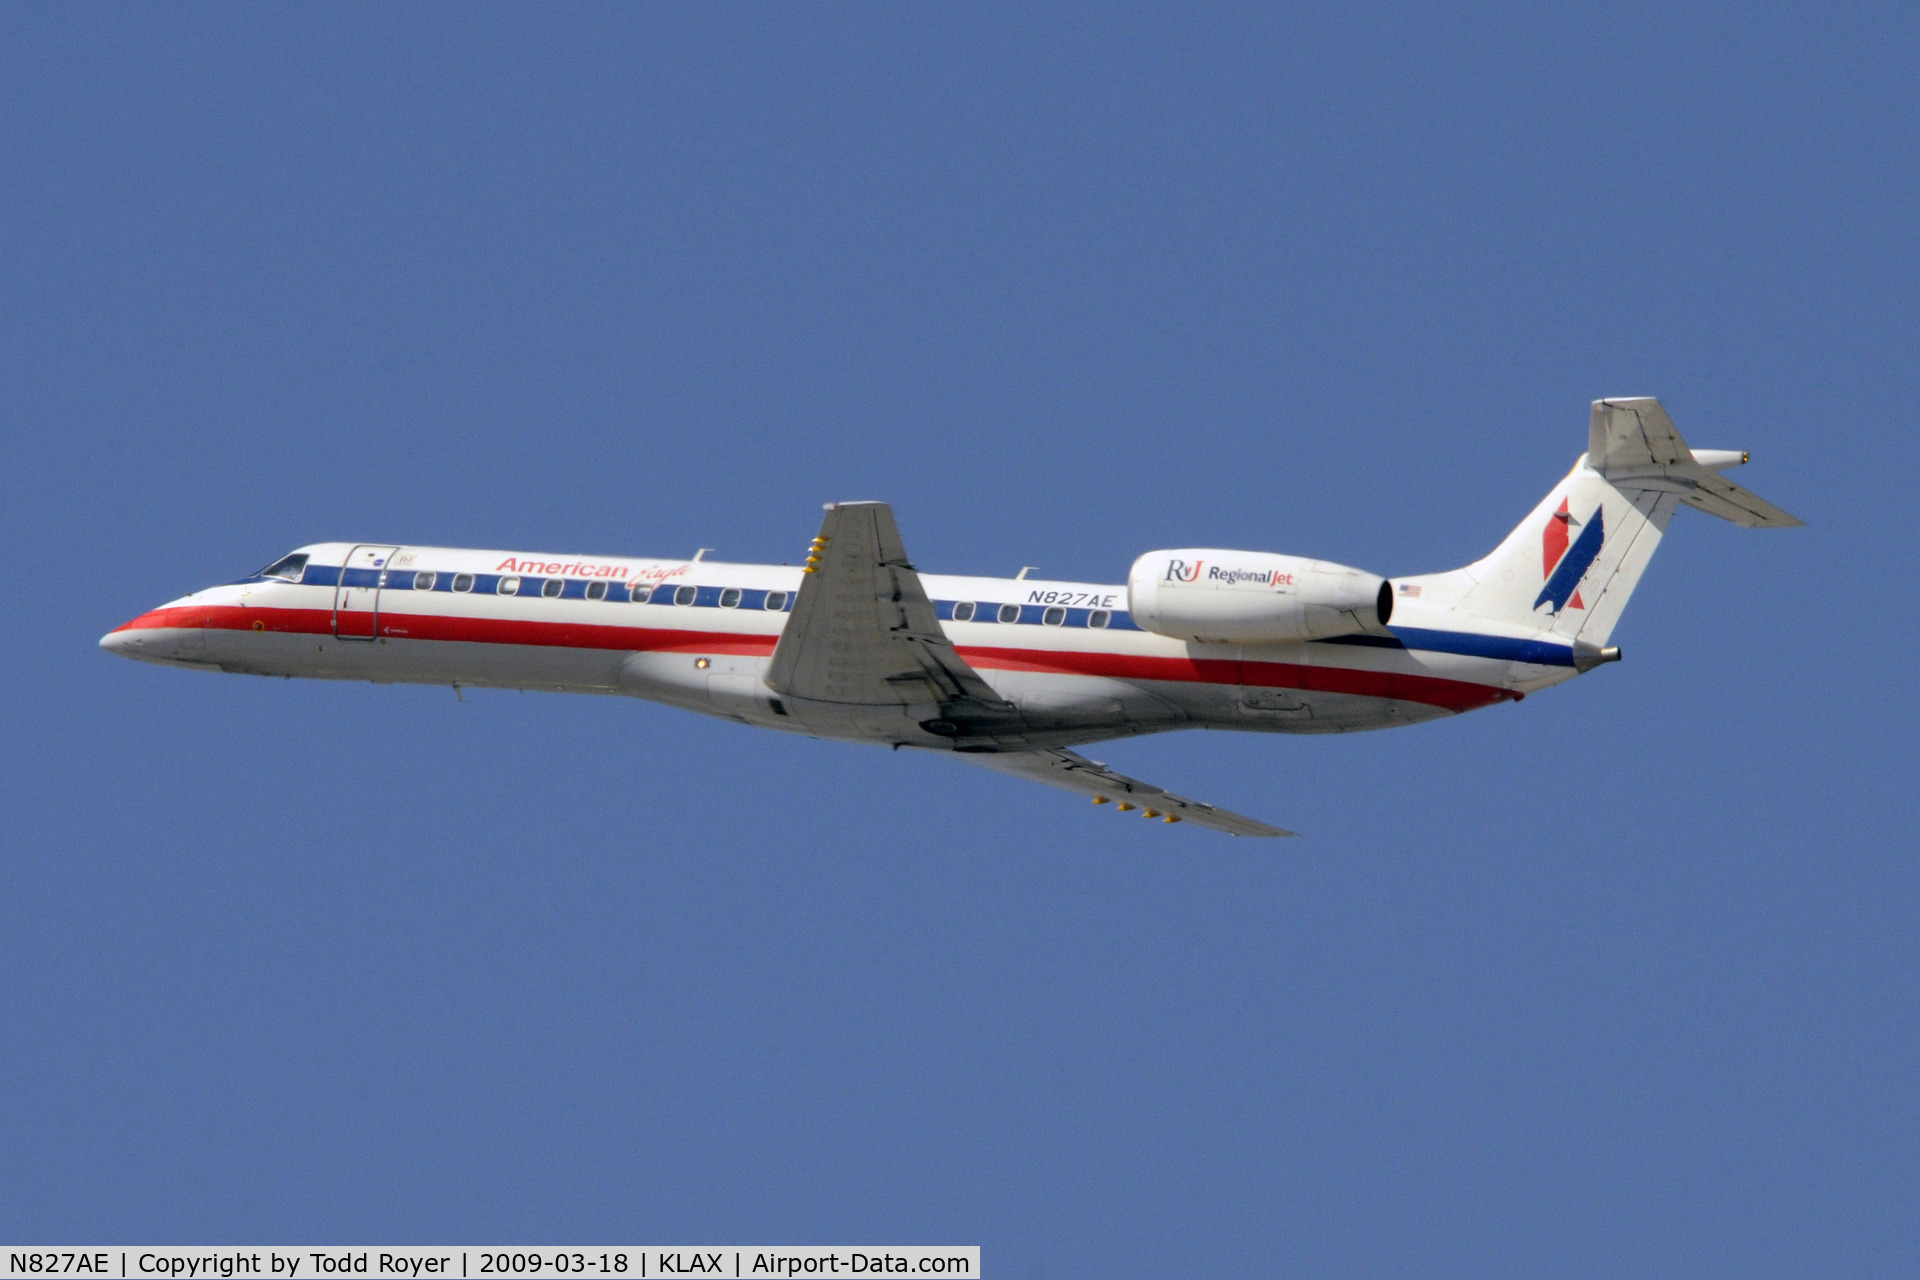 N827AE, 2002 Embraer ERJ-140LR (EMB-135KL) C/N 145602, Departing LAX on 25R